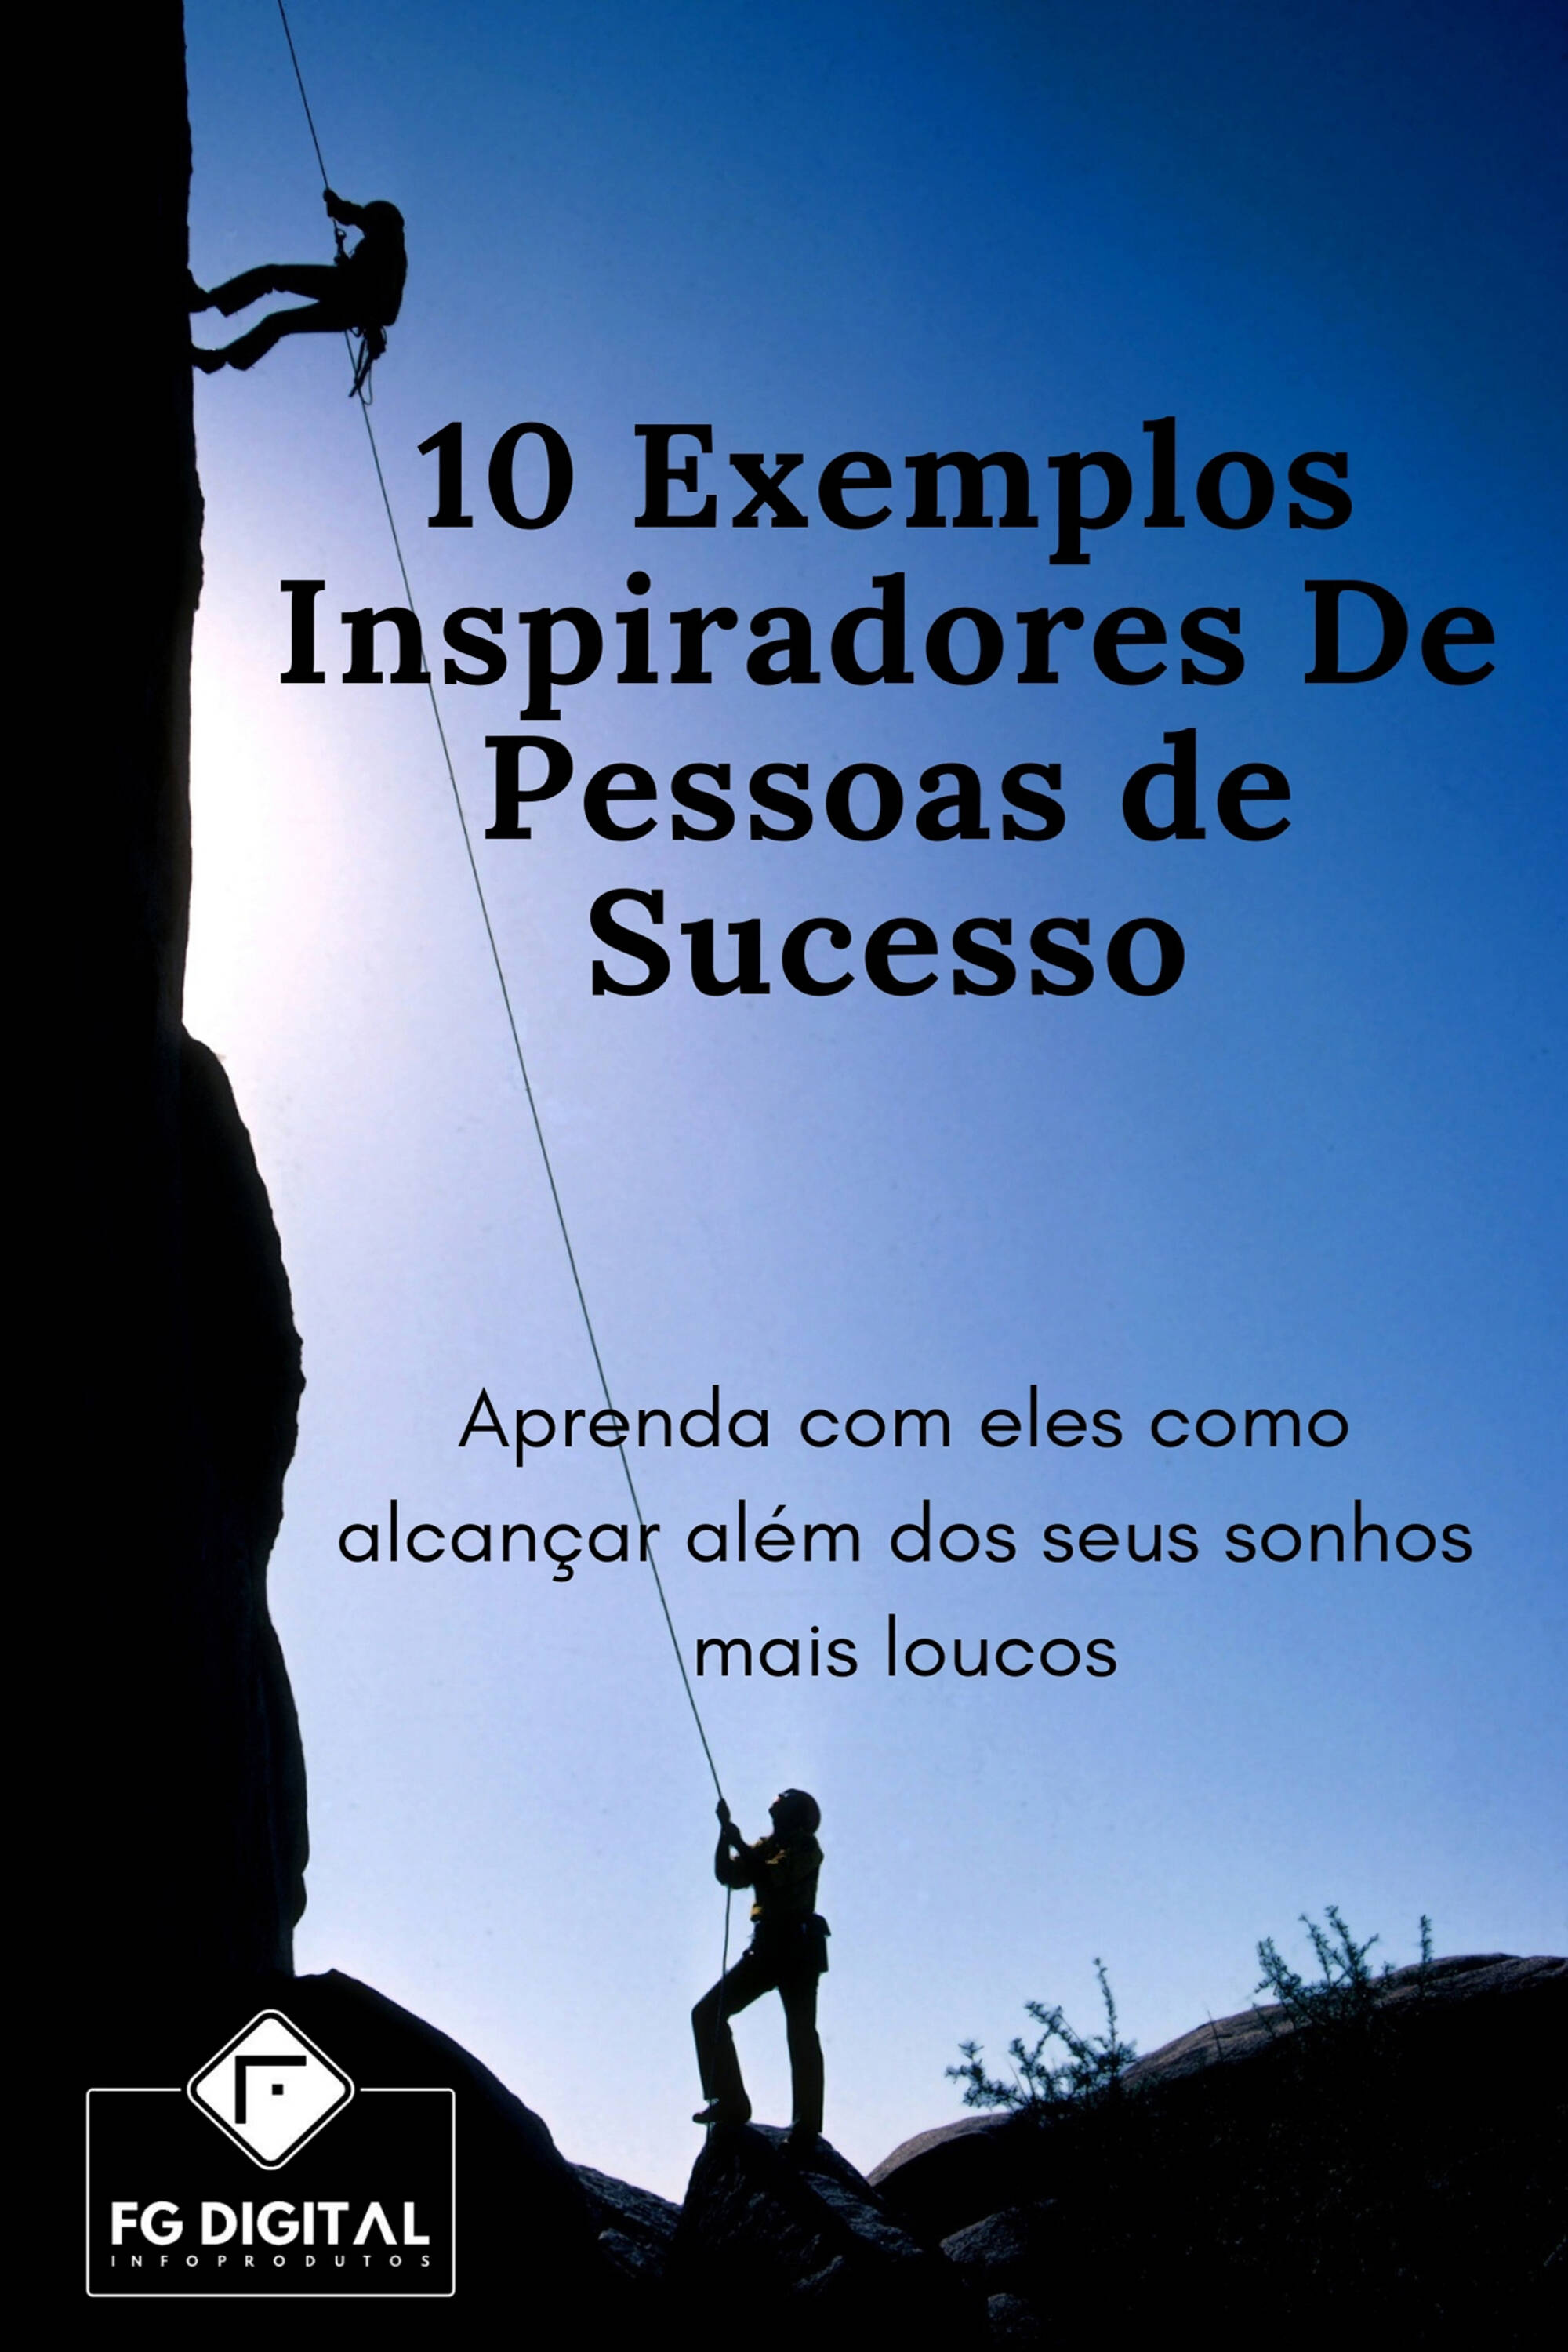 10 Exemplos Inspiradores De Pessoas de Sucesso